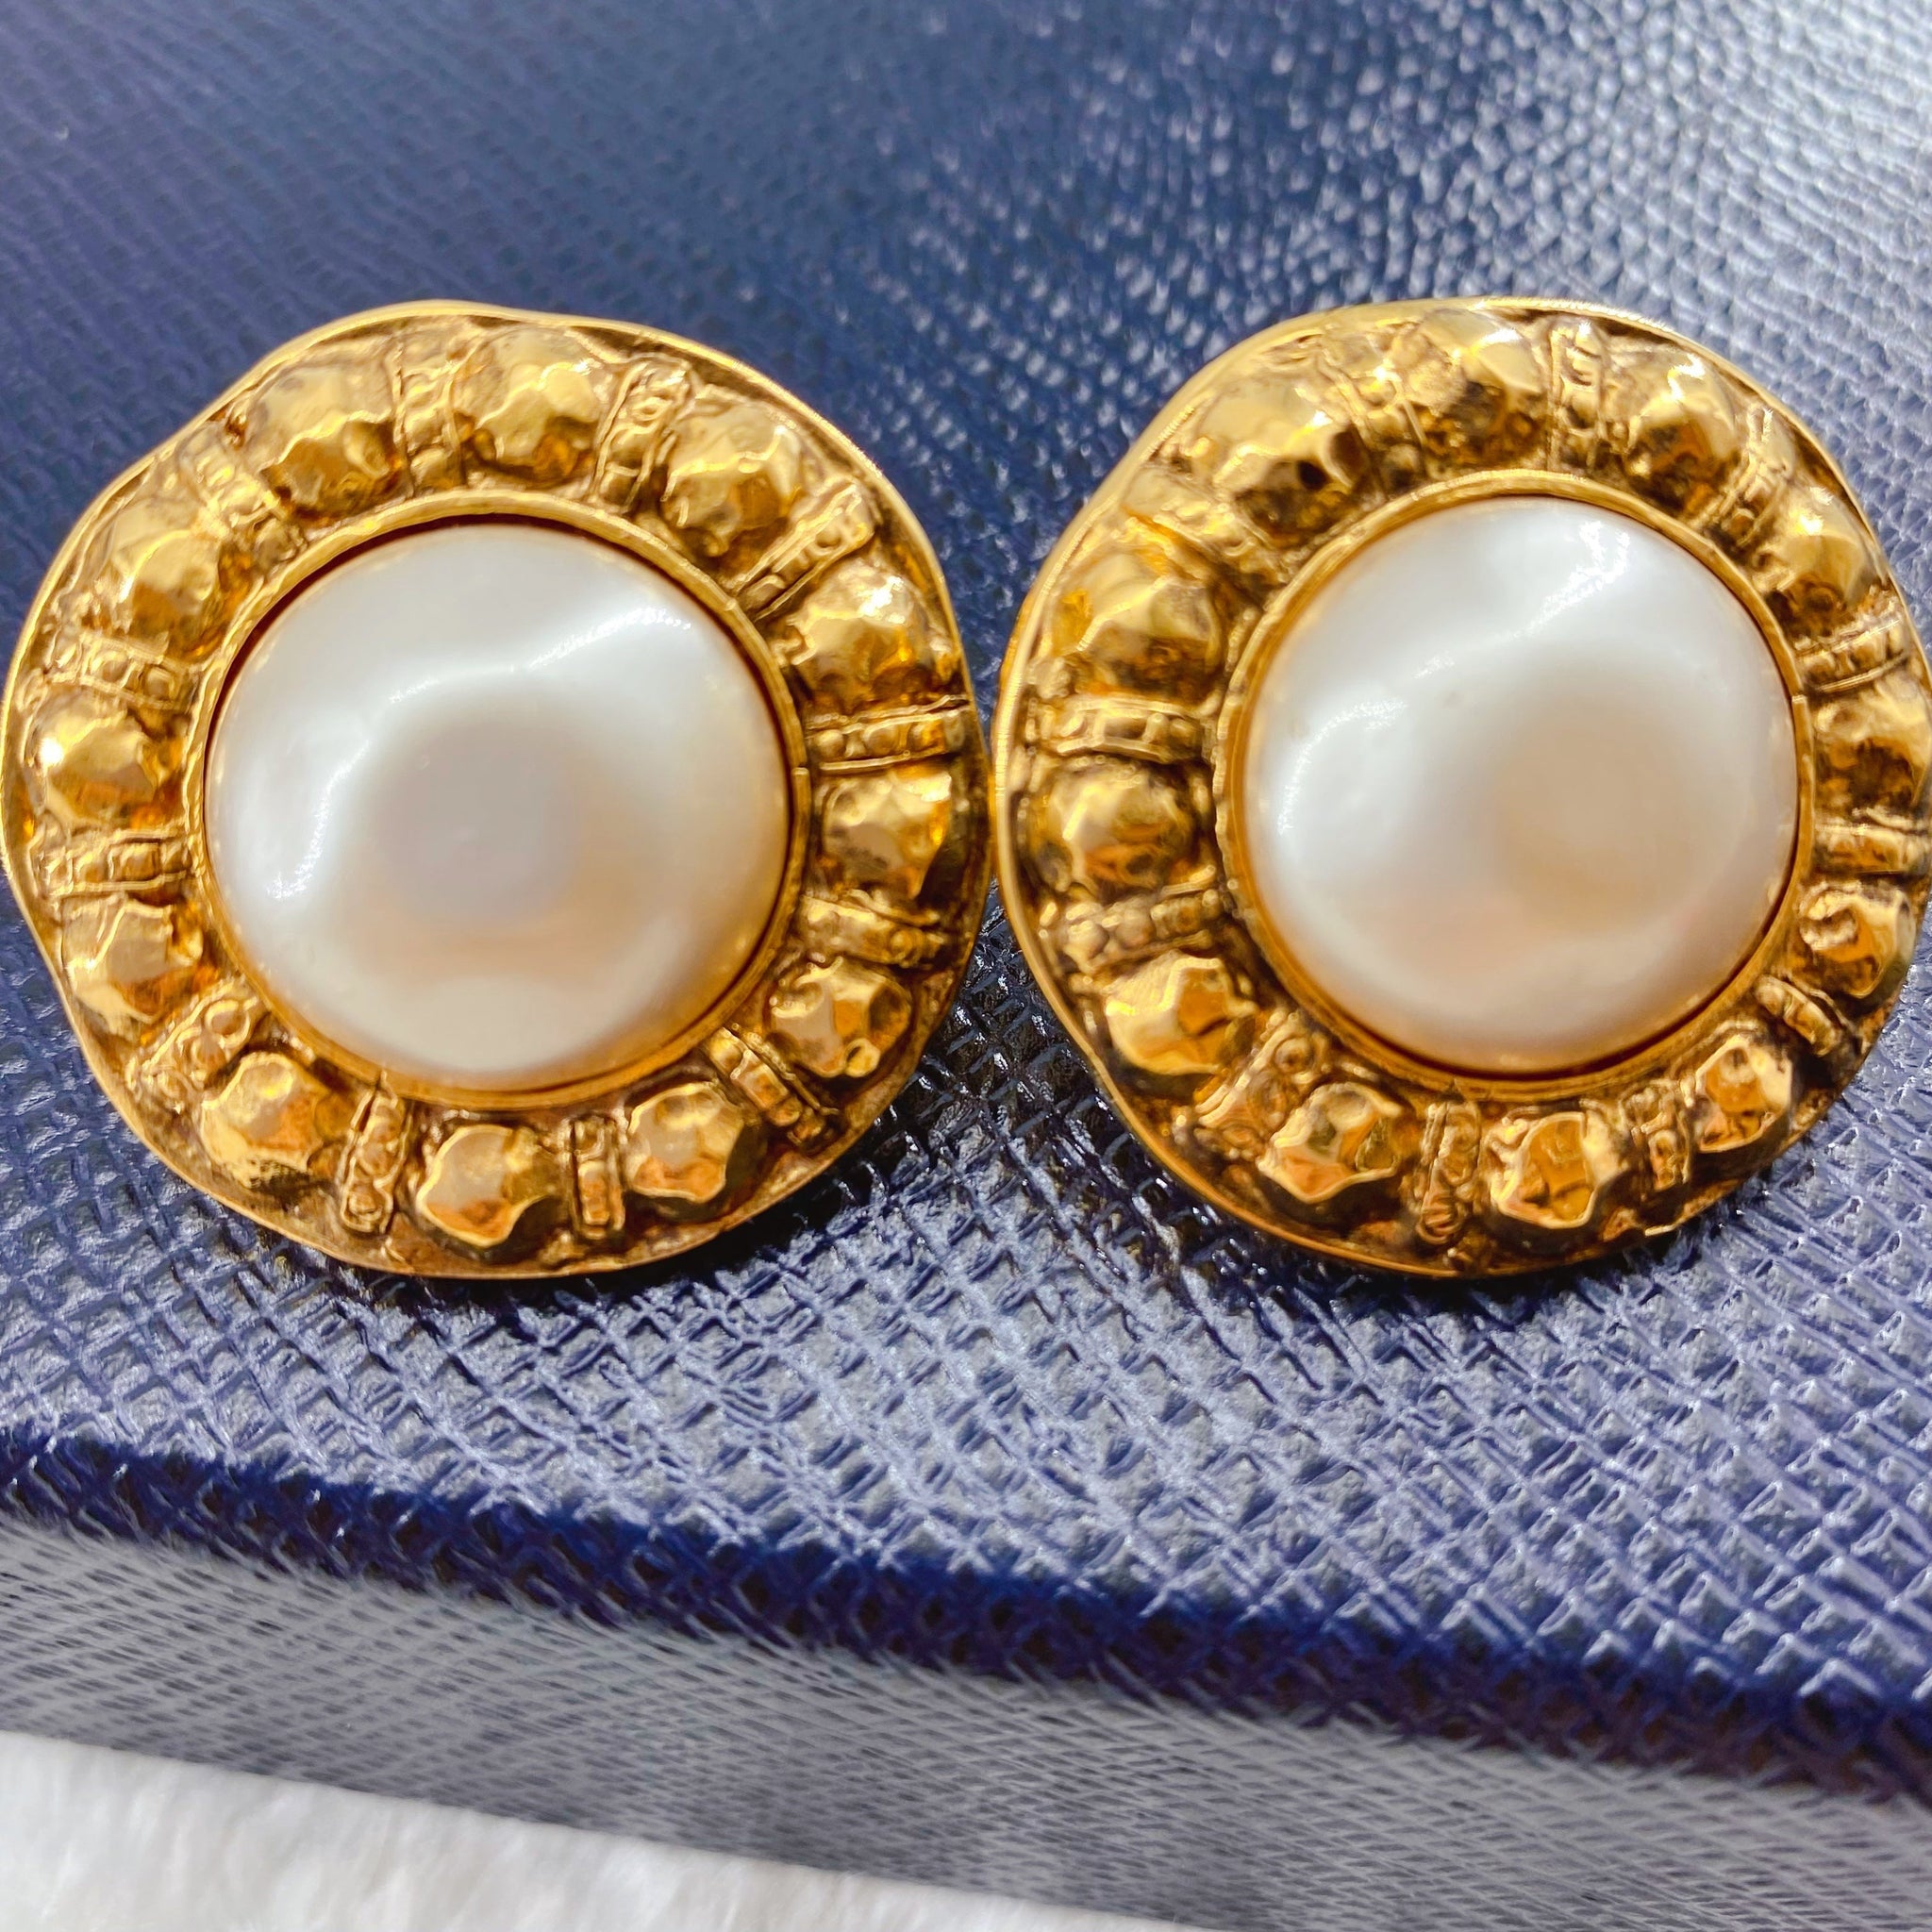 Chanel pearl earrings – Sheer Room